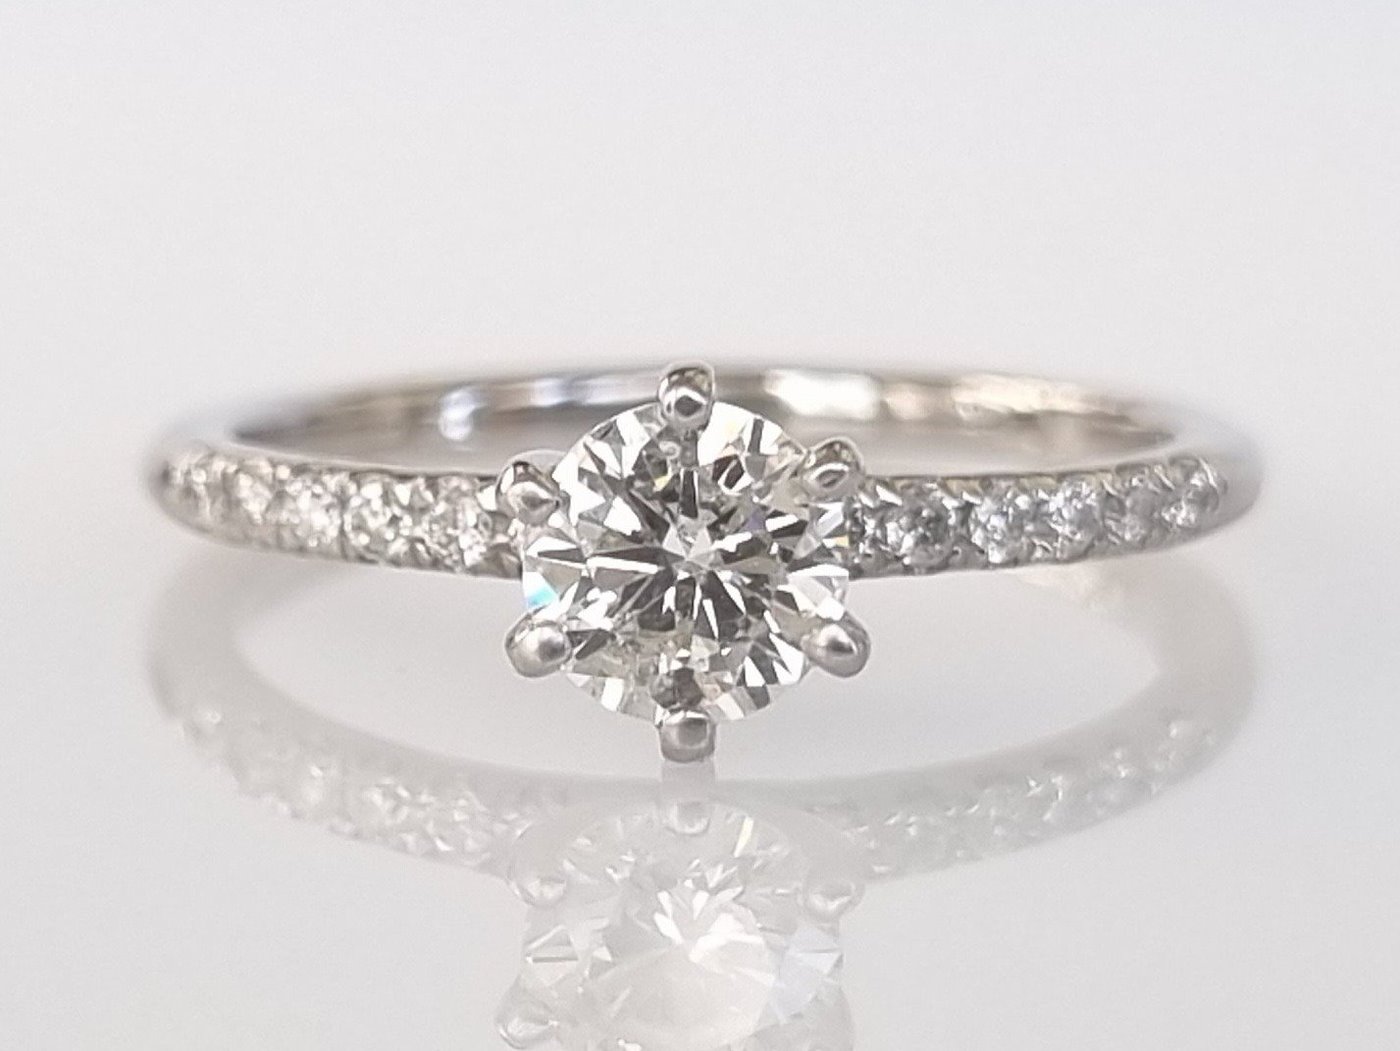 .. - Luxusní prsten 0,63 ct Diamanty, bílé zlato 585/1000, značeno platnou puncovní značkou "labuť", hrubá hmotnost 2,05 g